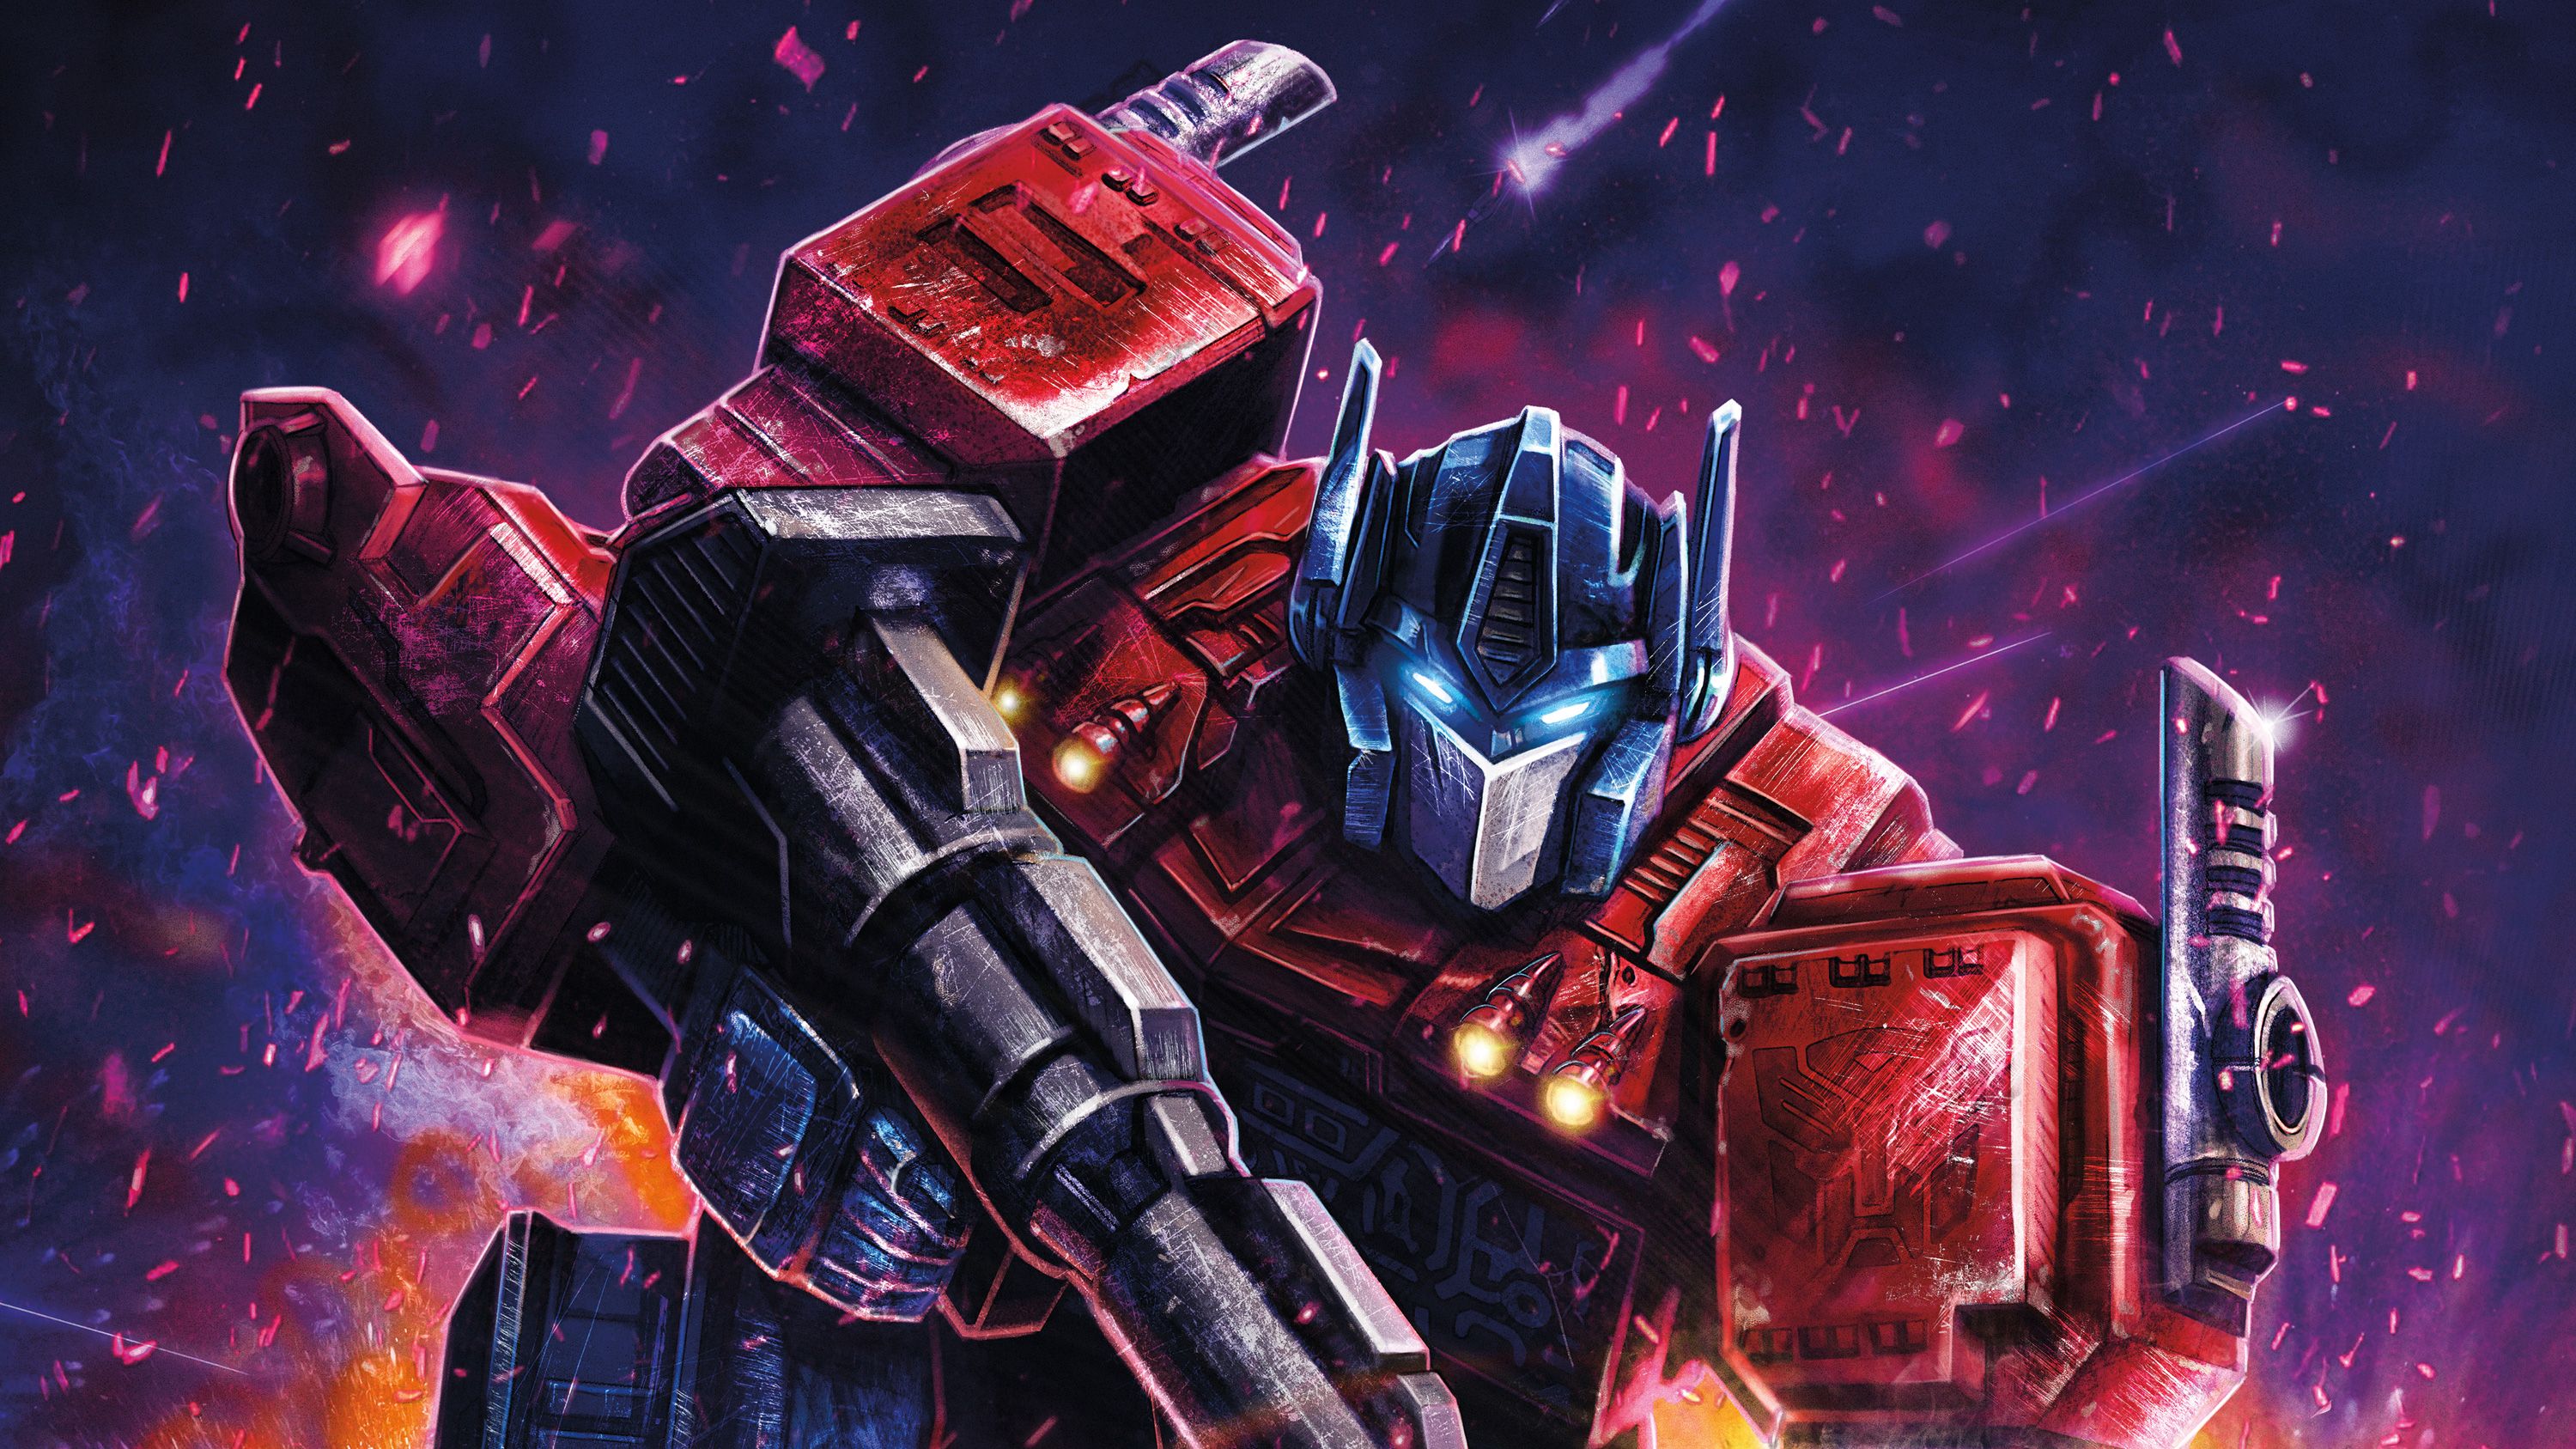 Transformers Artwork Wallpapers